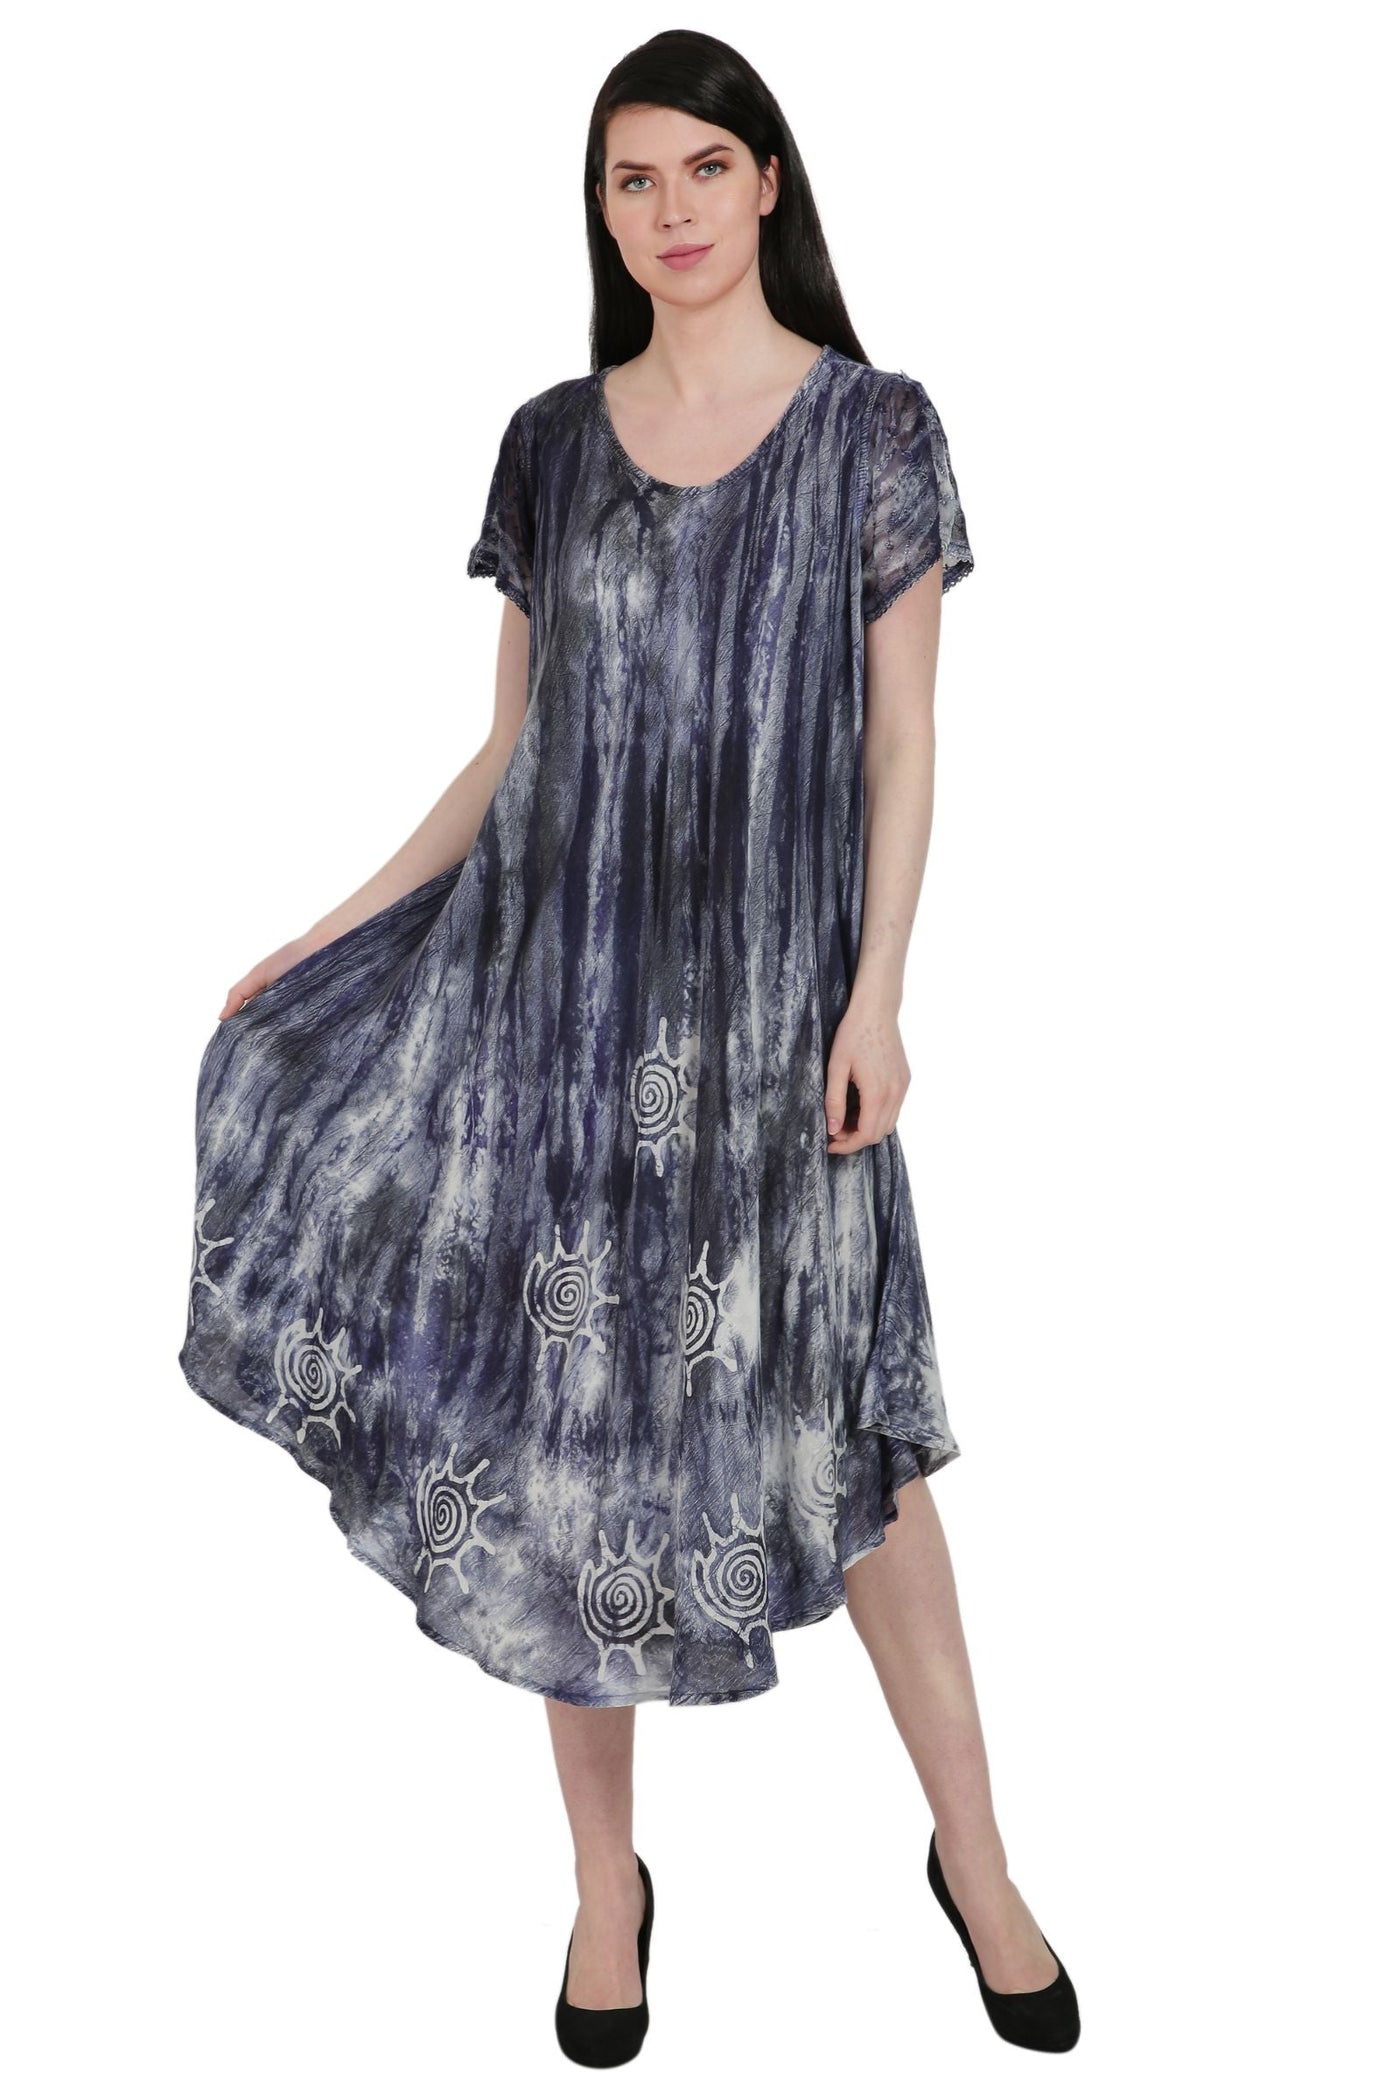 Batik + Tie Dye Trapeze Dress UDS52-2438